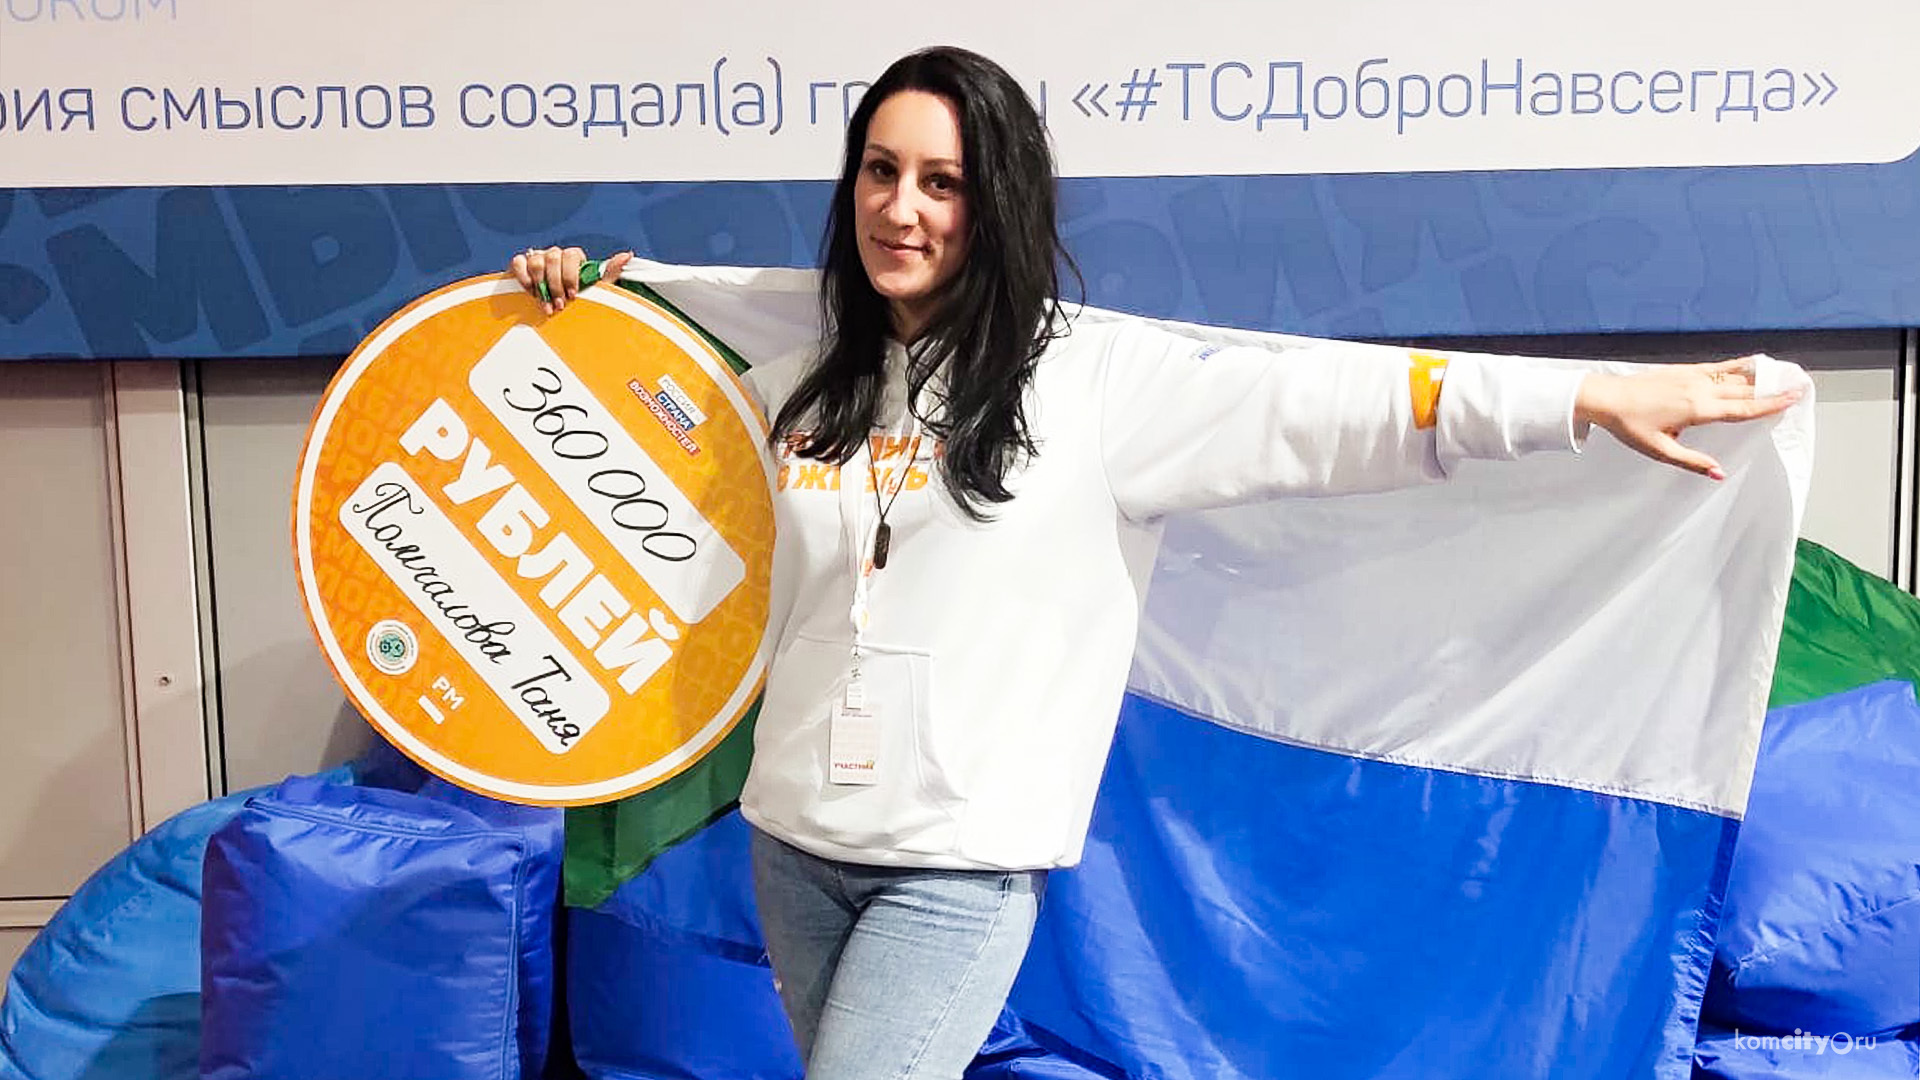 Грант на 360 тысяч выиграла участница из Комсомольска-на-Амуре на всероссийском форуме